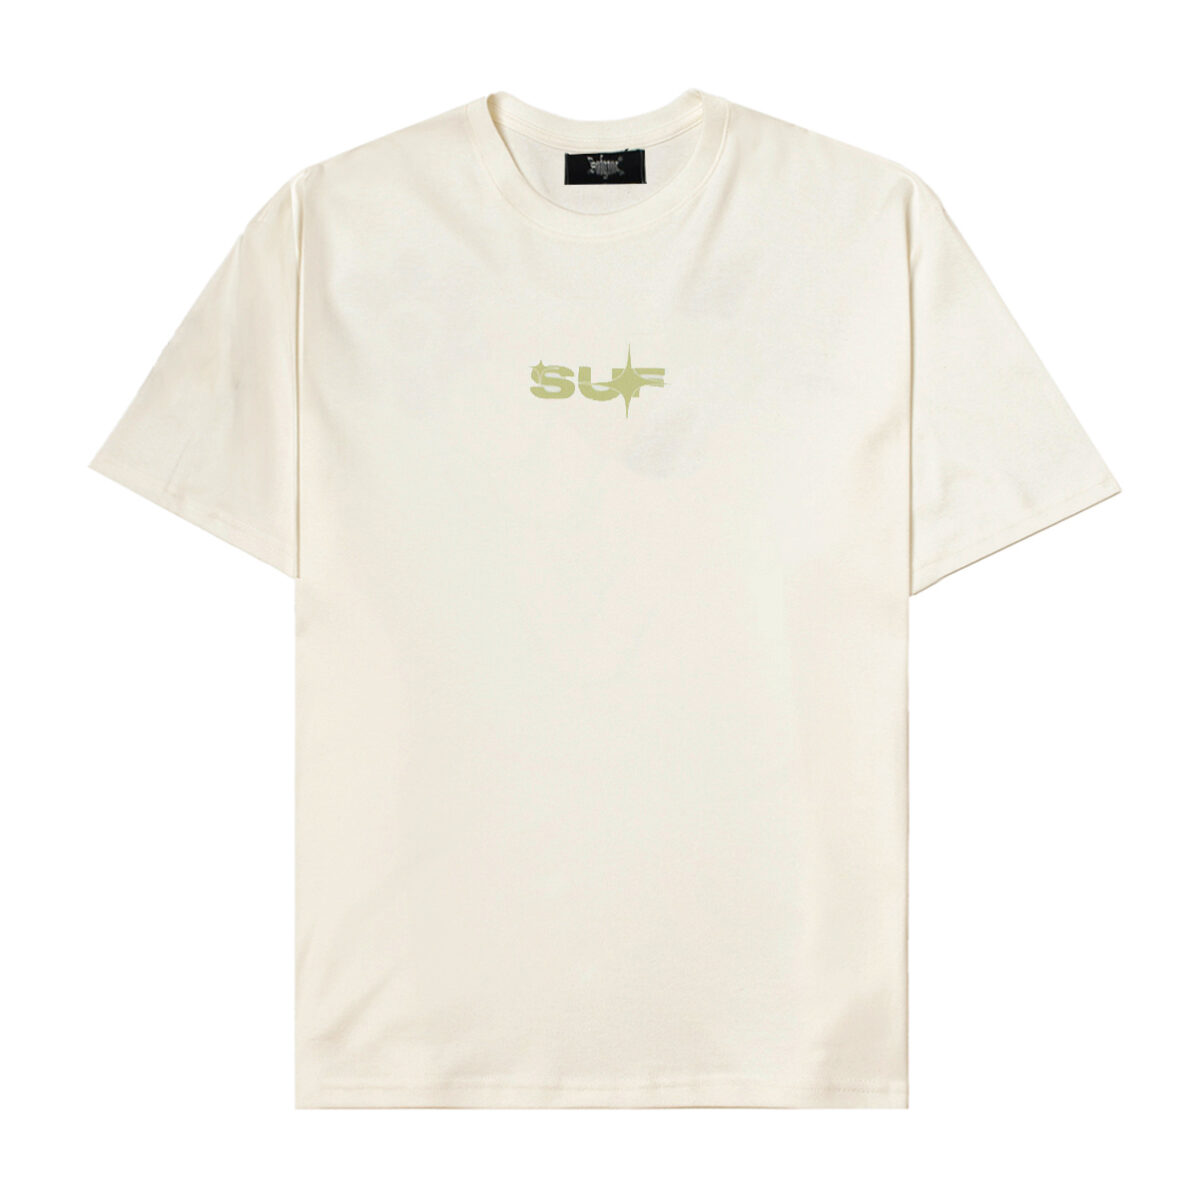 Camiseta Sufgang Logo 2.4 Off White